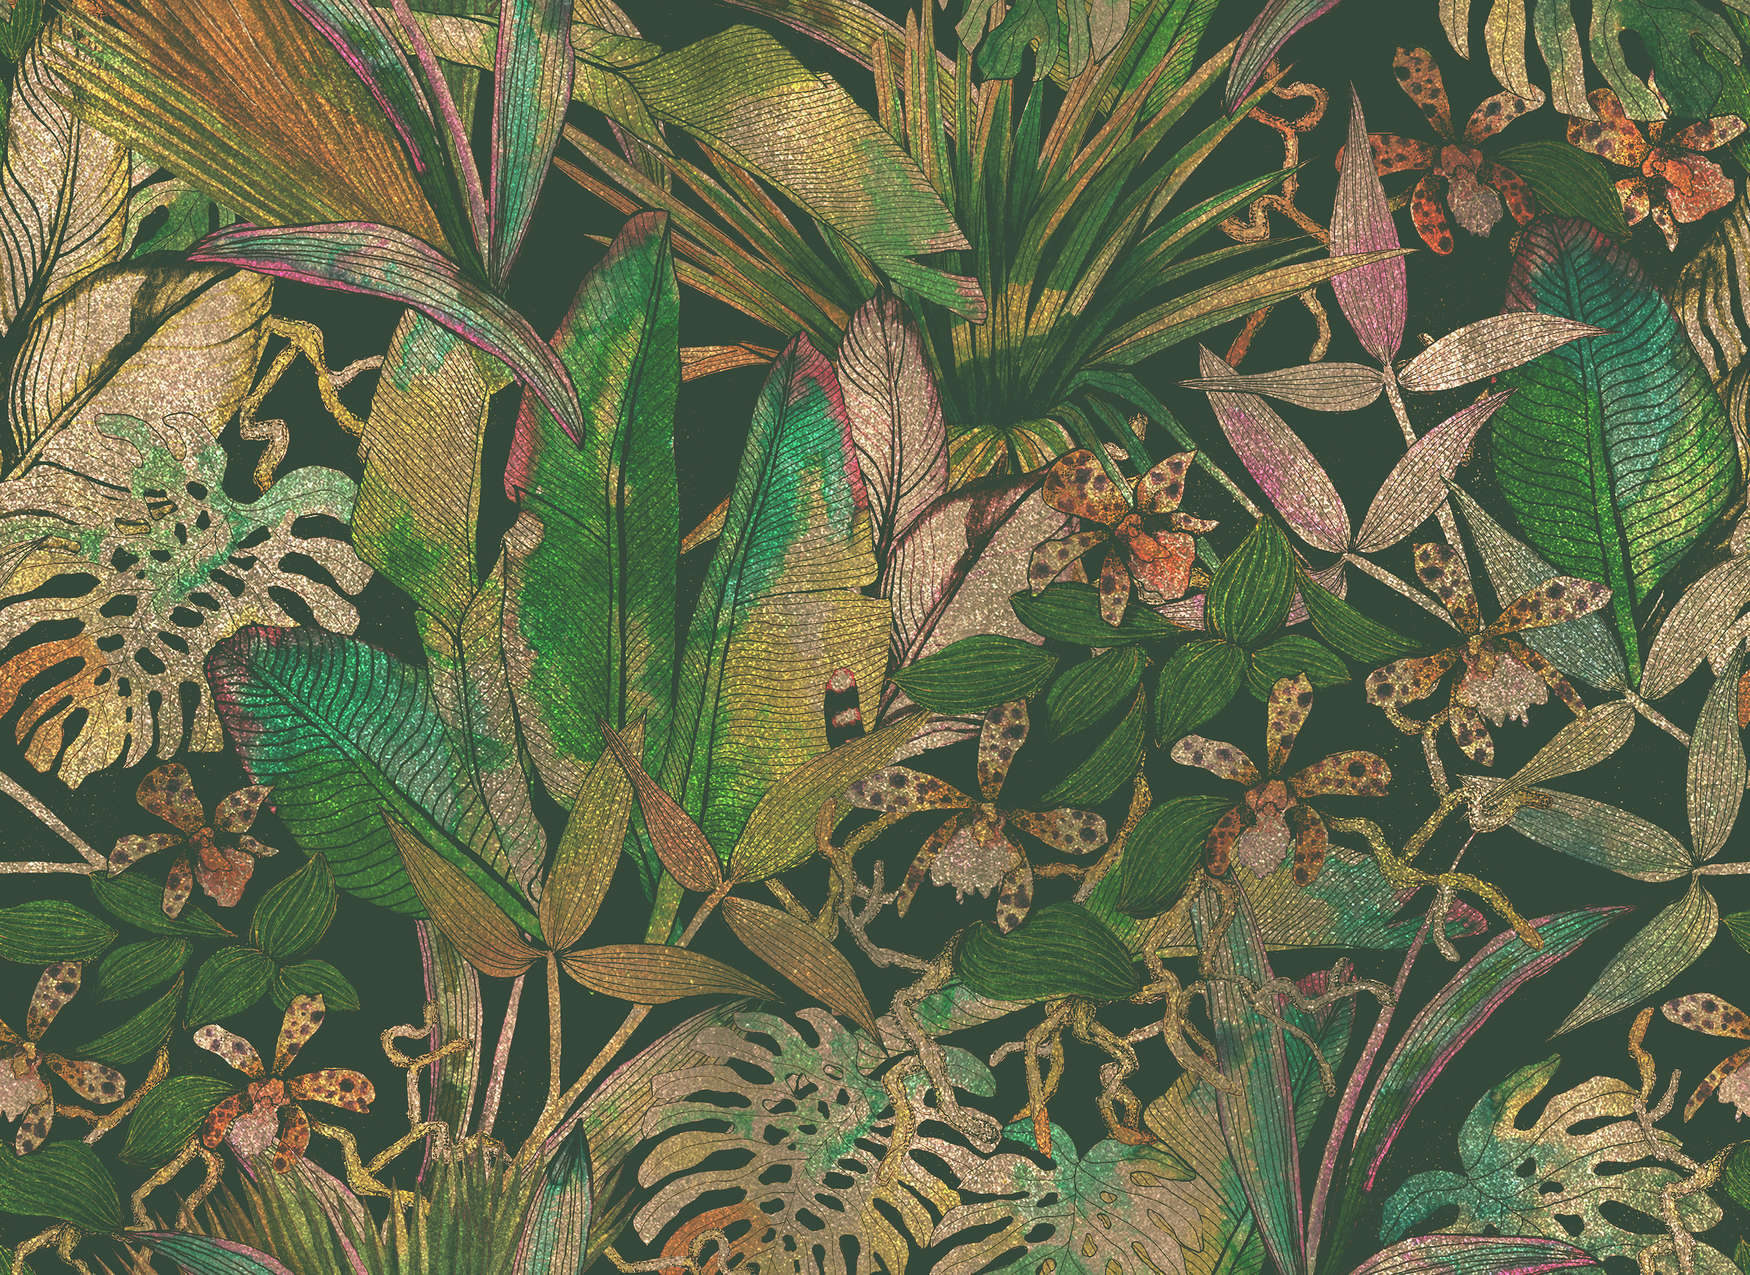             Digital behang jungle motief met bladeren & bloemen - groen, beige
        